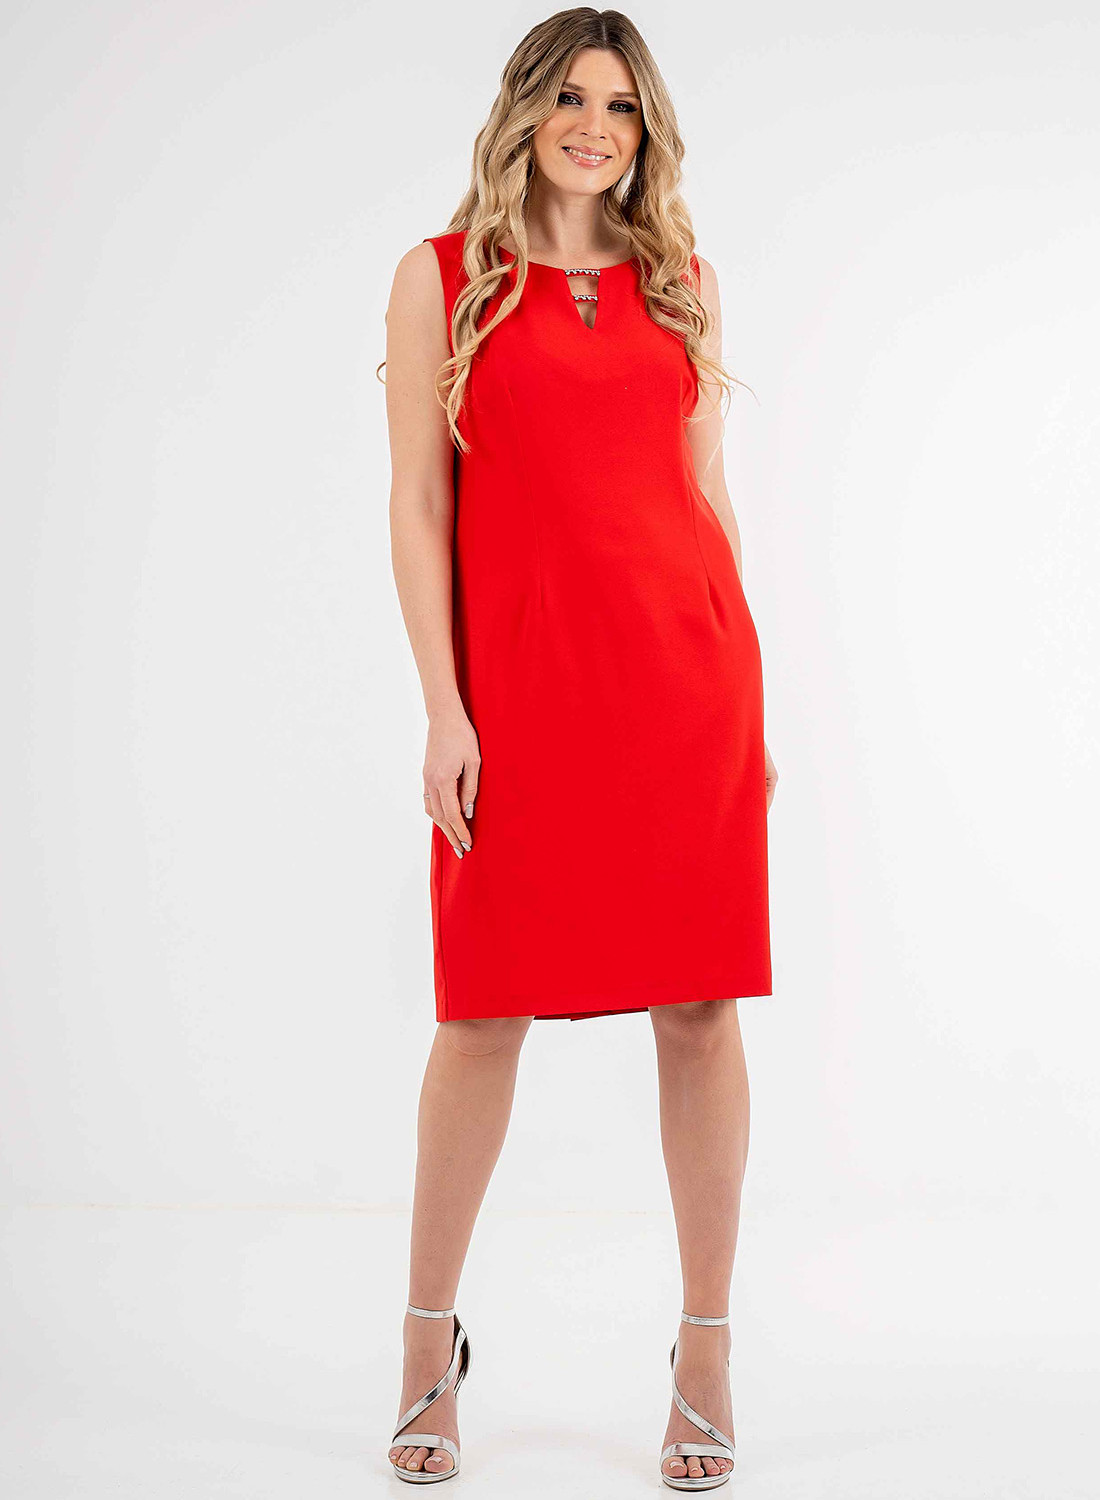 Θηλυκό midi κόκκινο φόρεμα